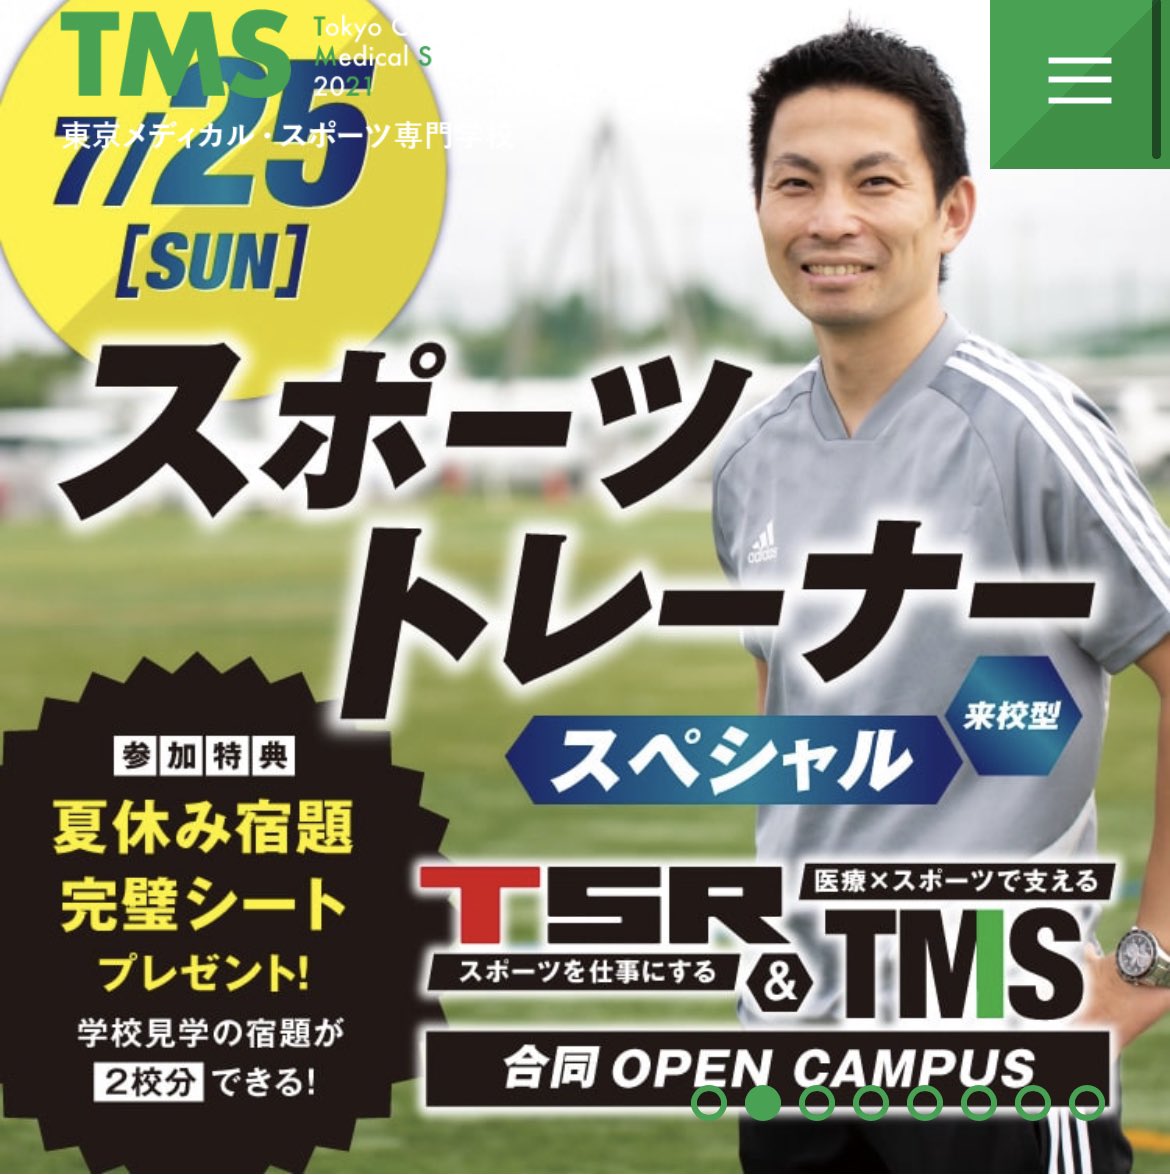 東京メディカル スポーツ専門学校 Tms 公式 Tokyomedical Twitter